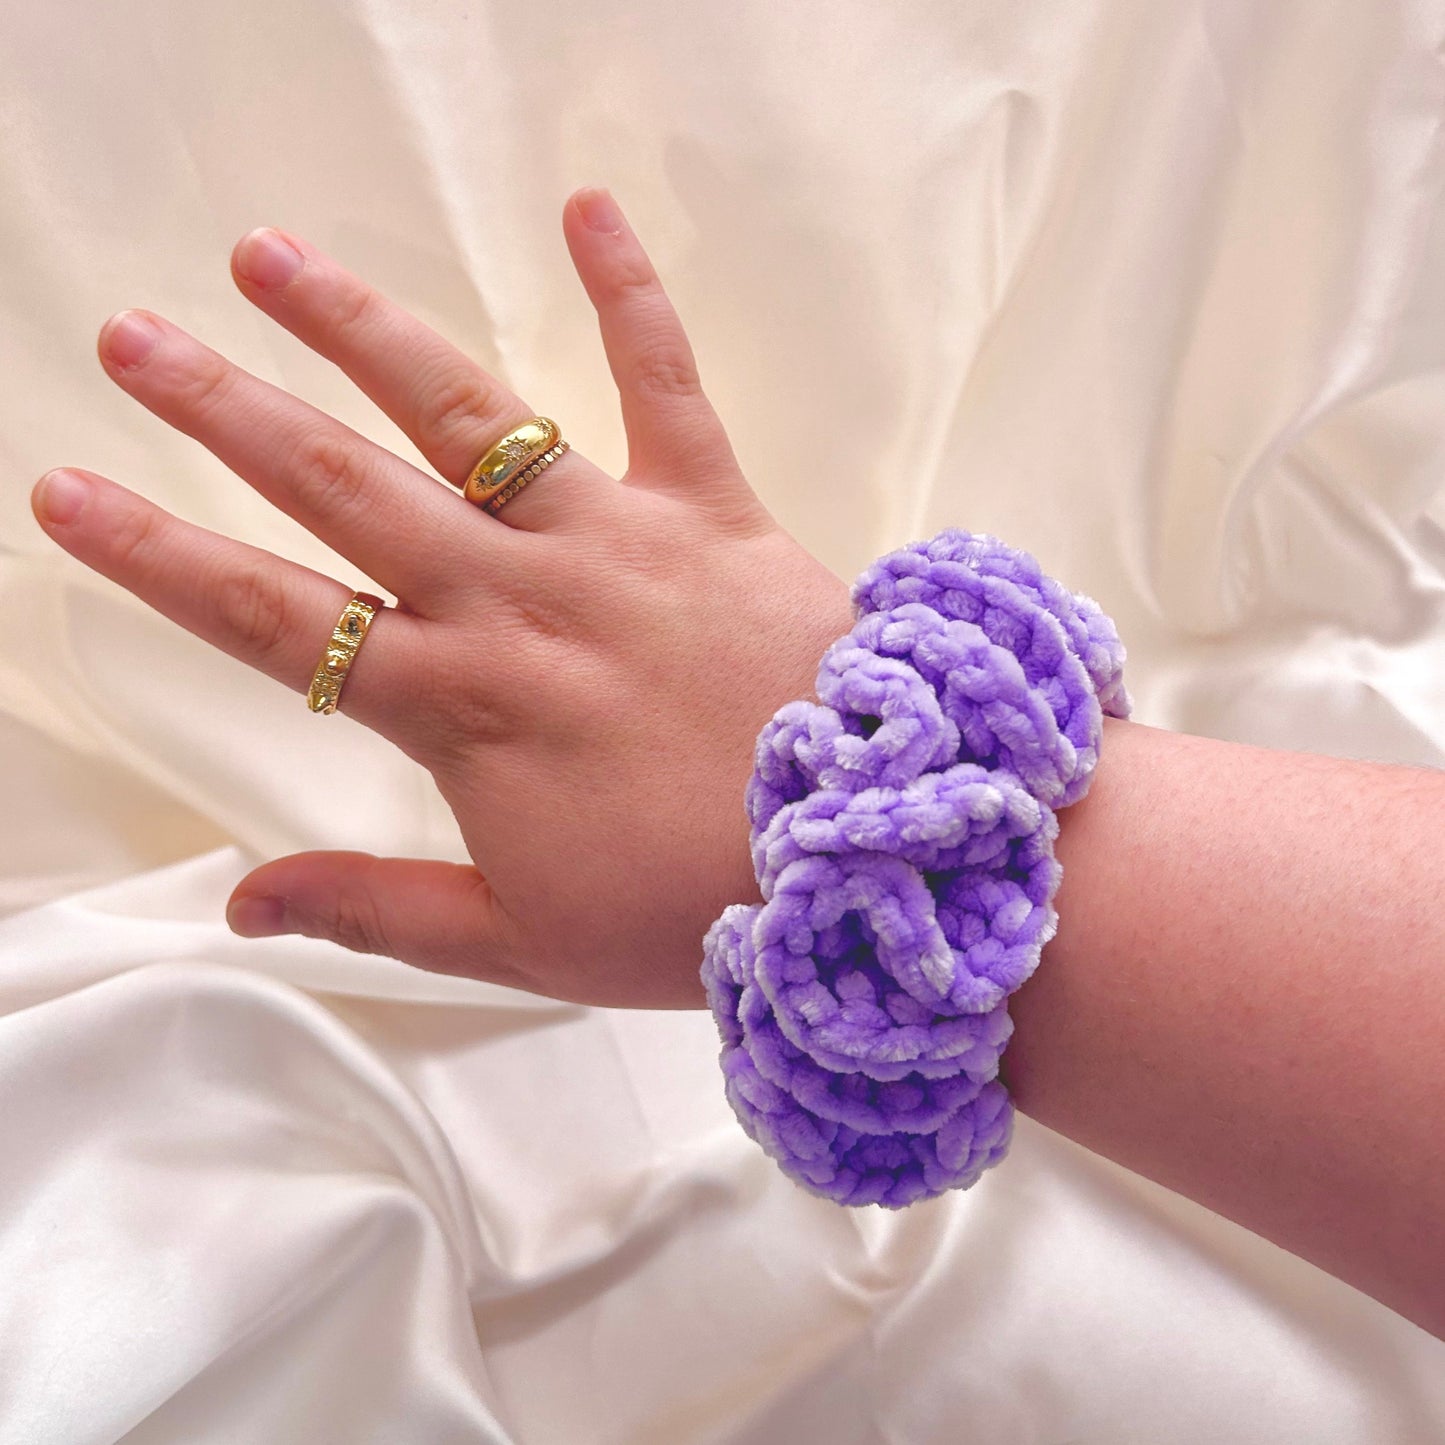 Purple XL Crochet Velvet Scrunchie